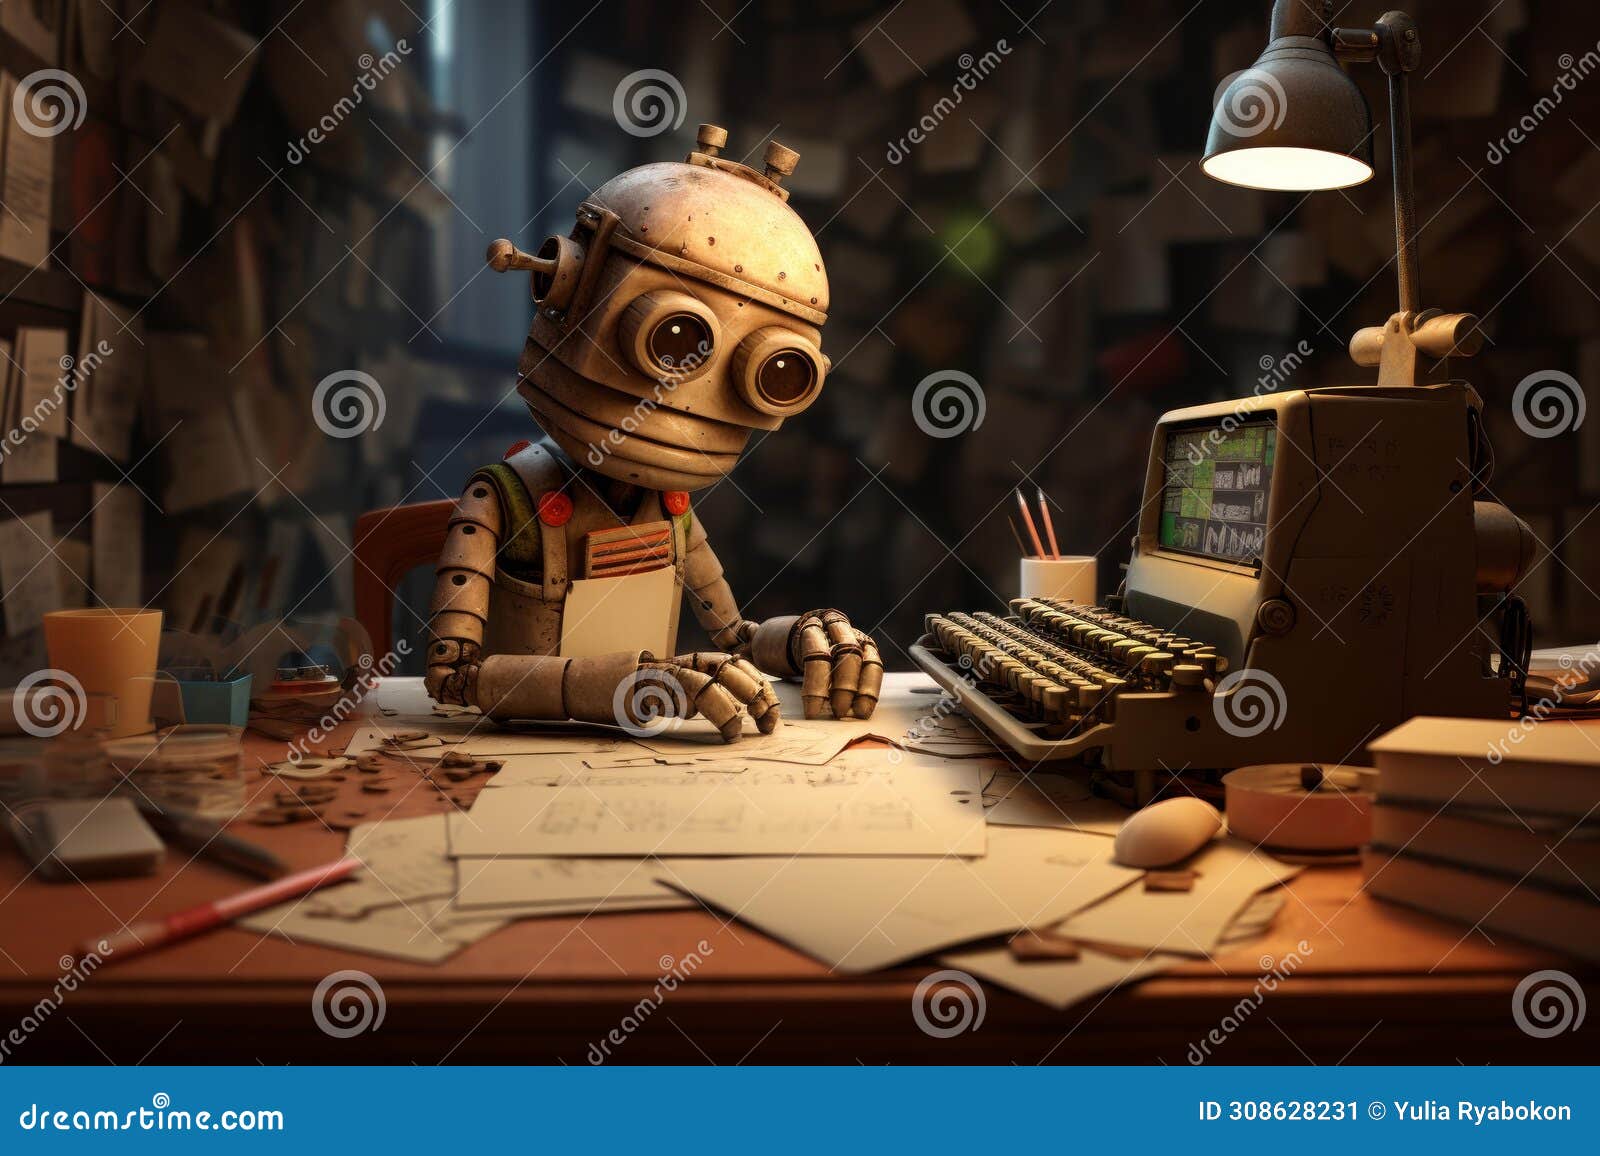 medieval robot redactor working at typewriter. generate ai